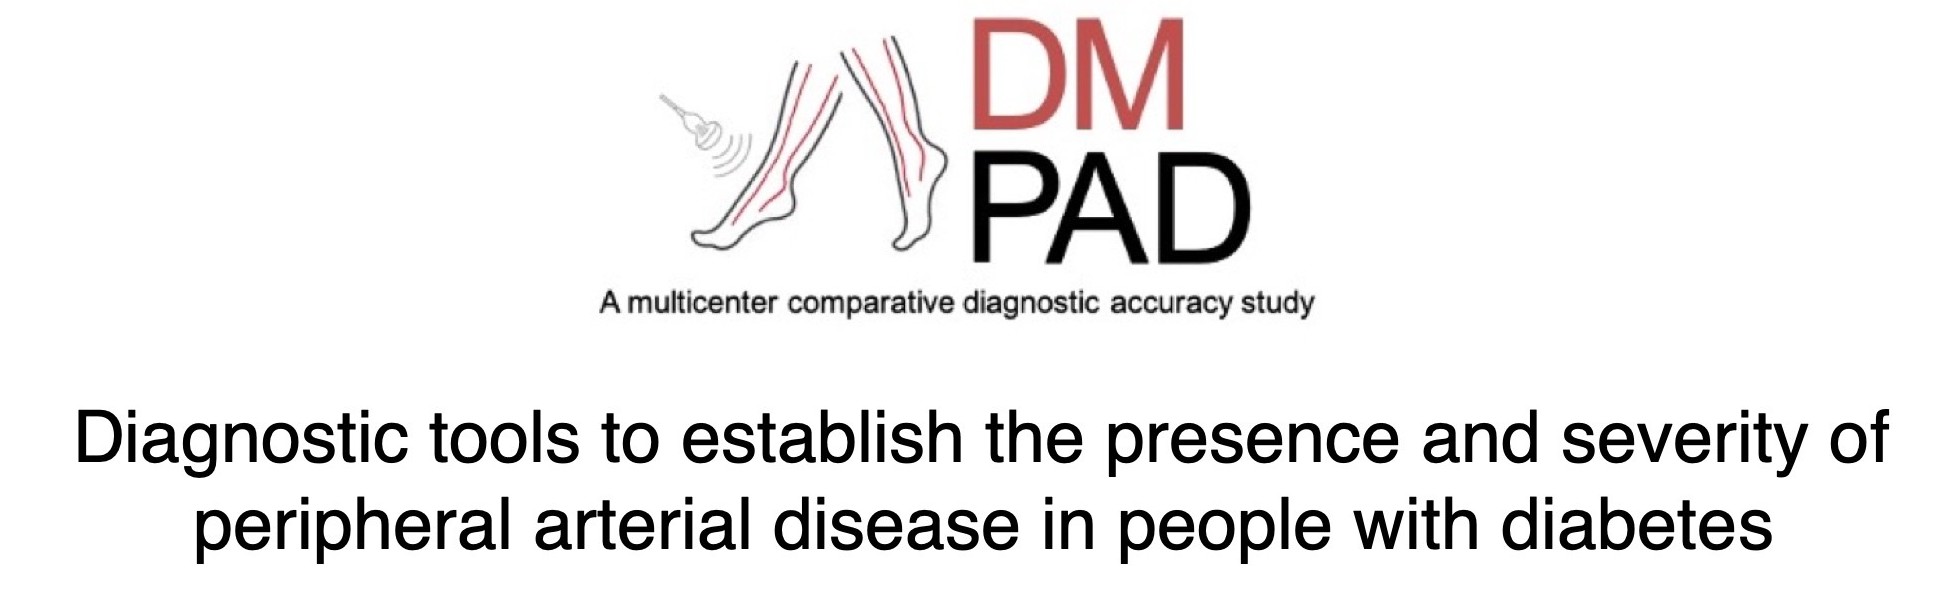 DM PAD logo